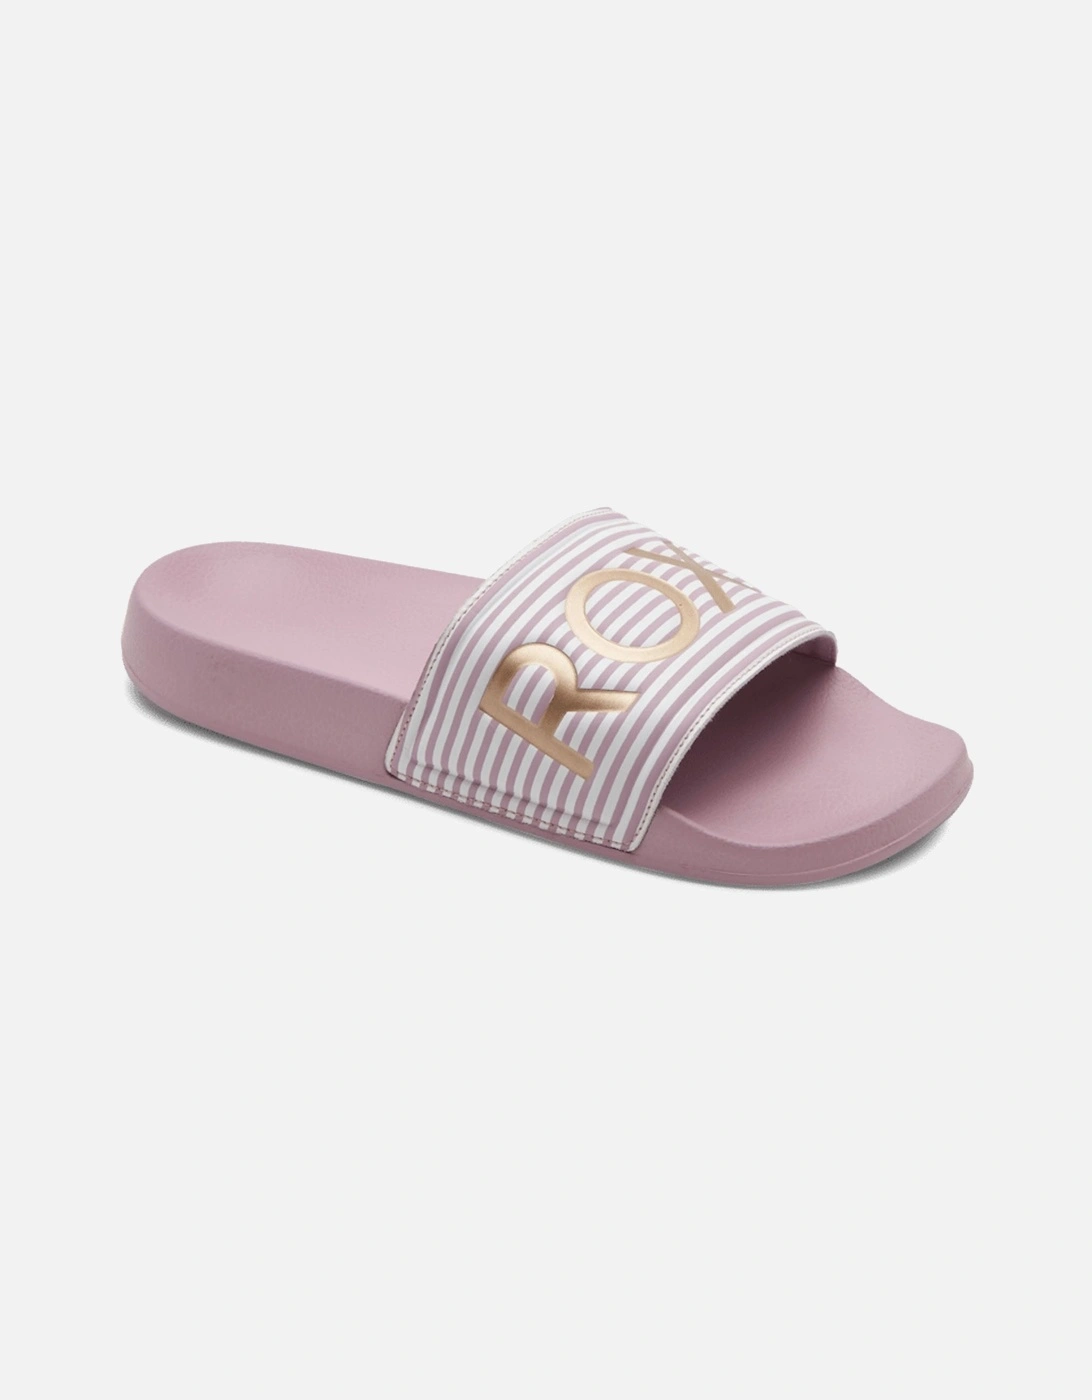 Womens Slippy Summer Sandals Sliders